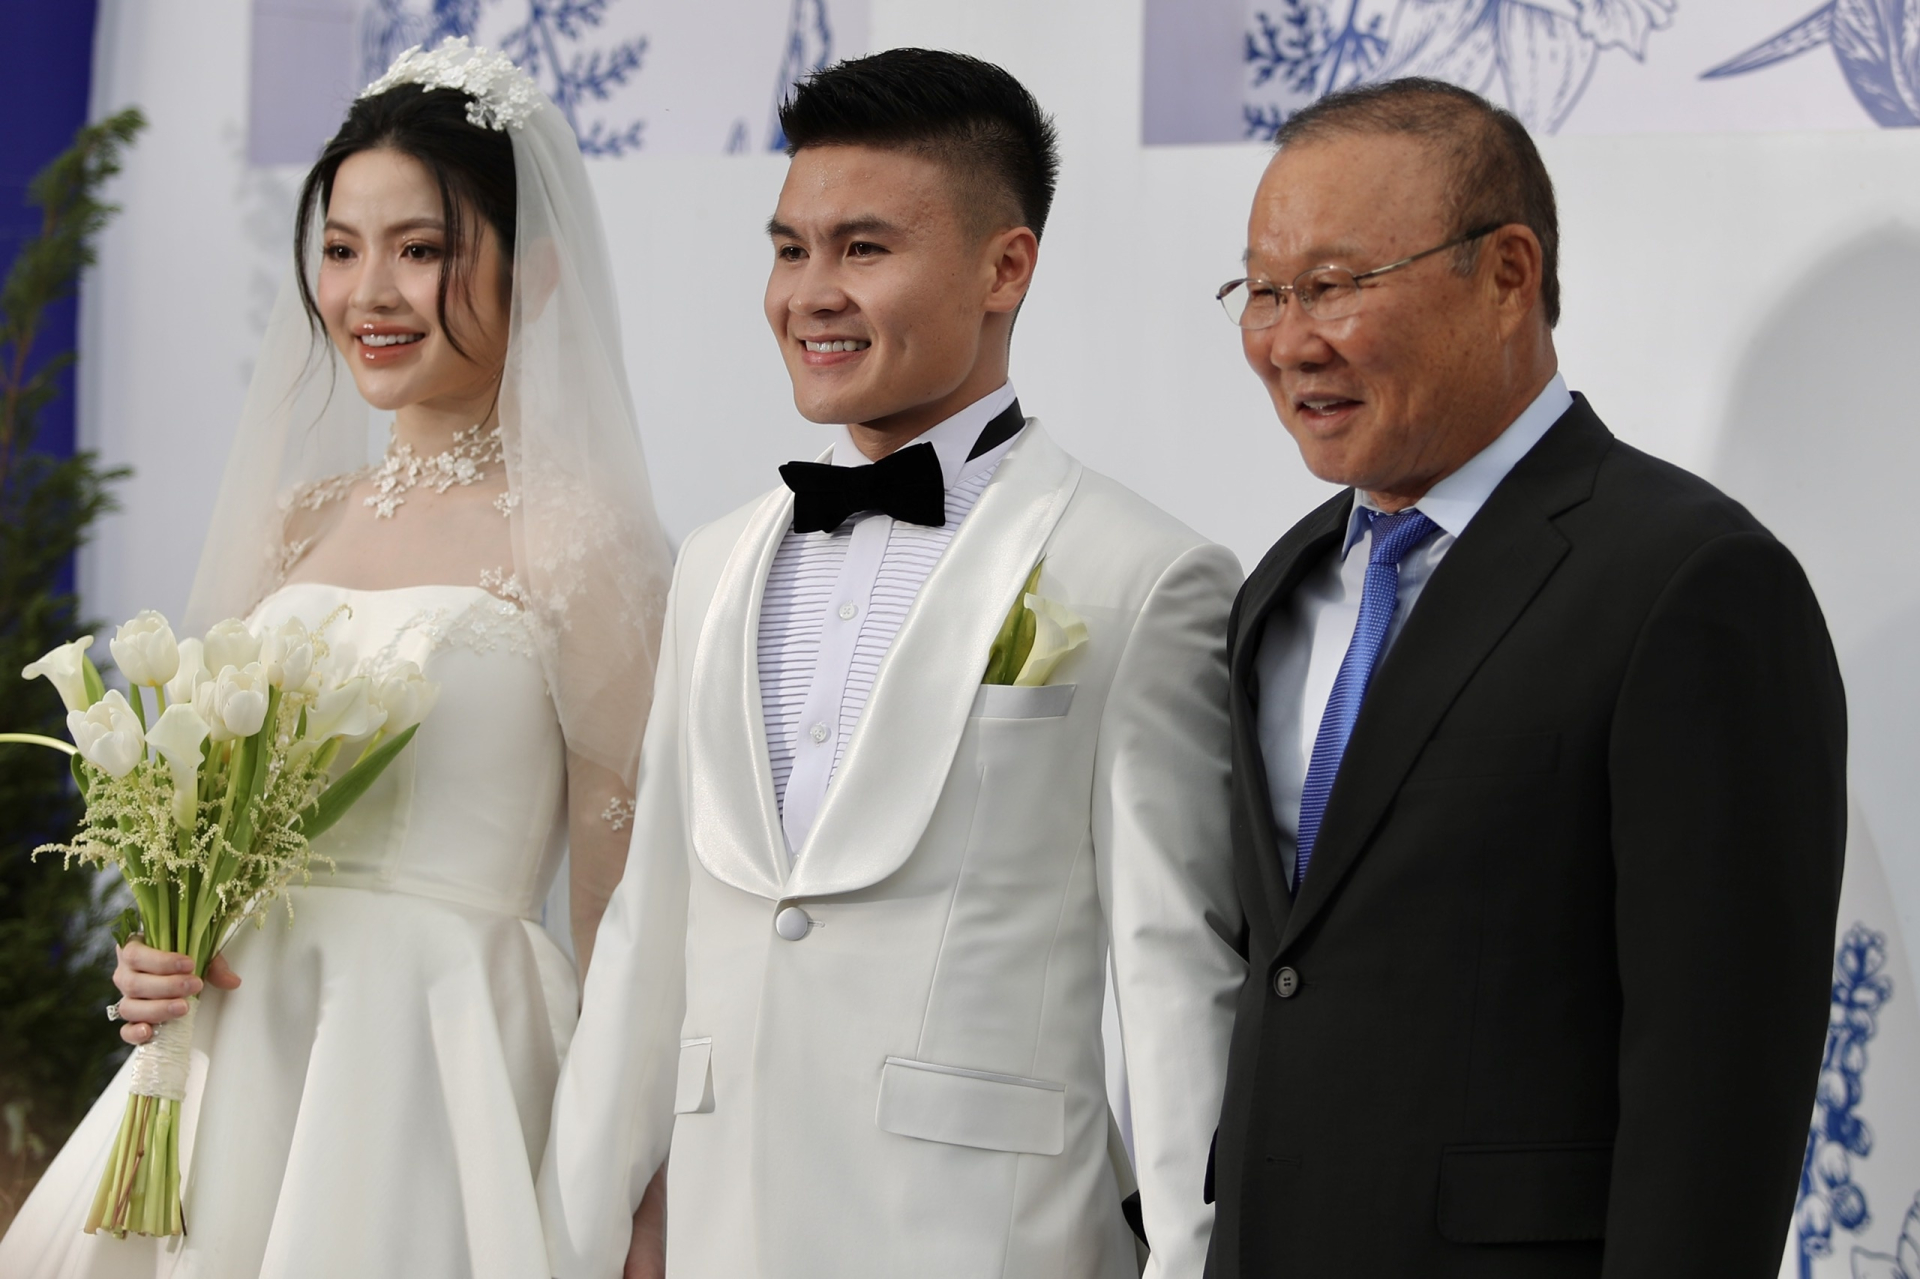 HLV Park Hang Seo đã đến chúc phúc cậu học trò cưng vào hôn lễ ngày 28/3 và cách đây ít ngày ông đã quay về Hàn Quốc